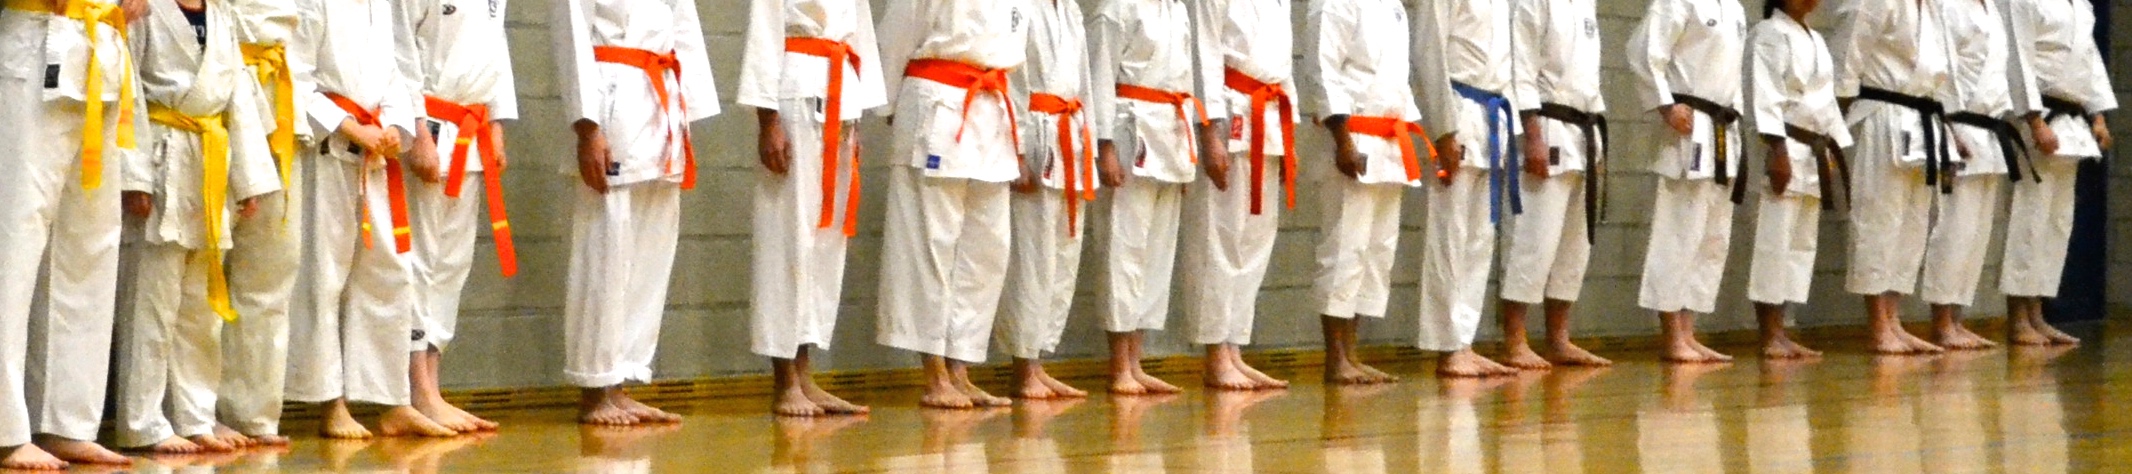 Funakoshi Karate Tongerlo